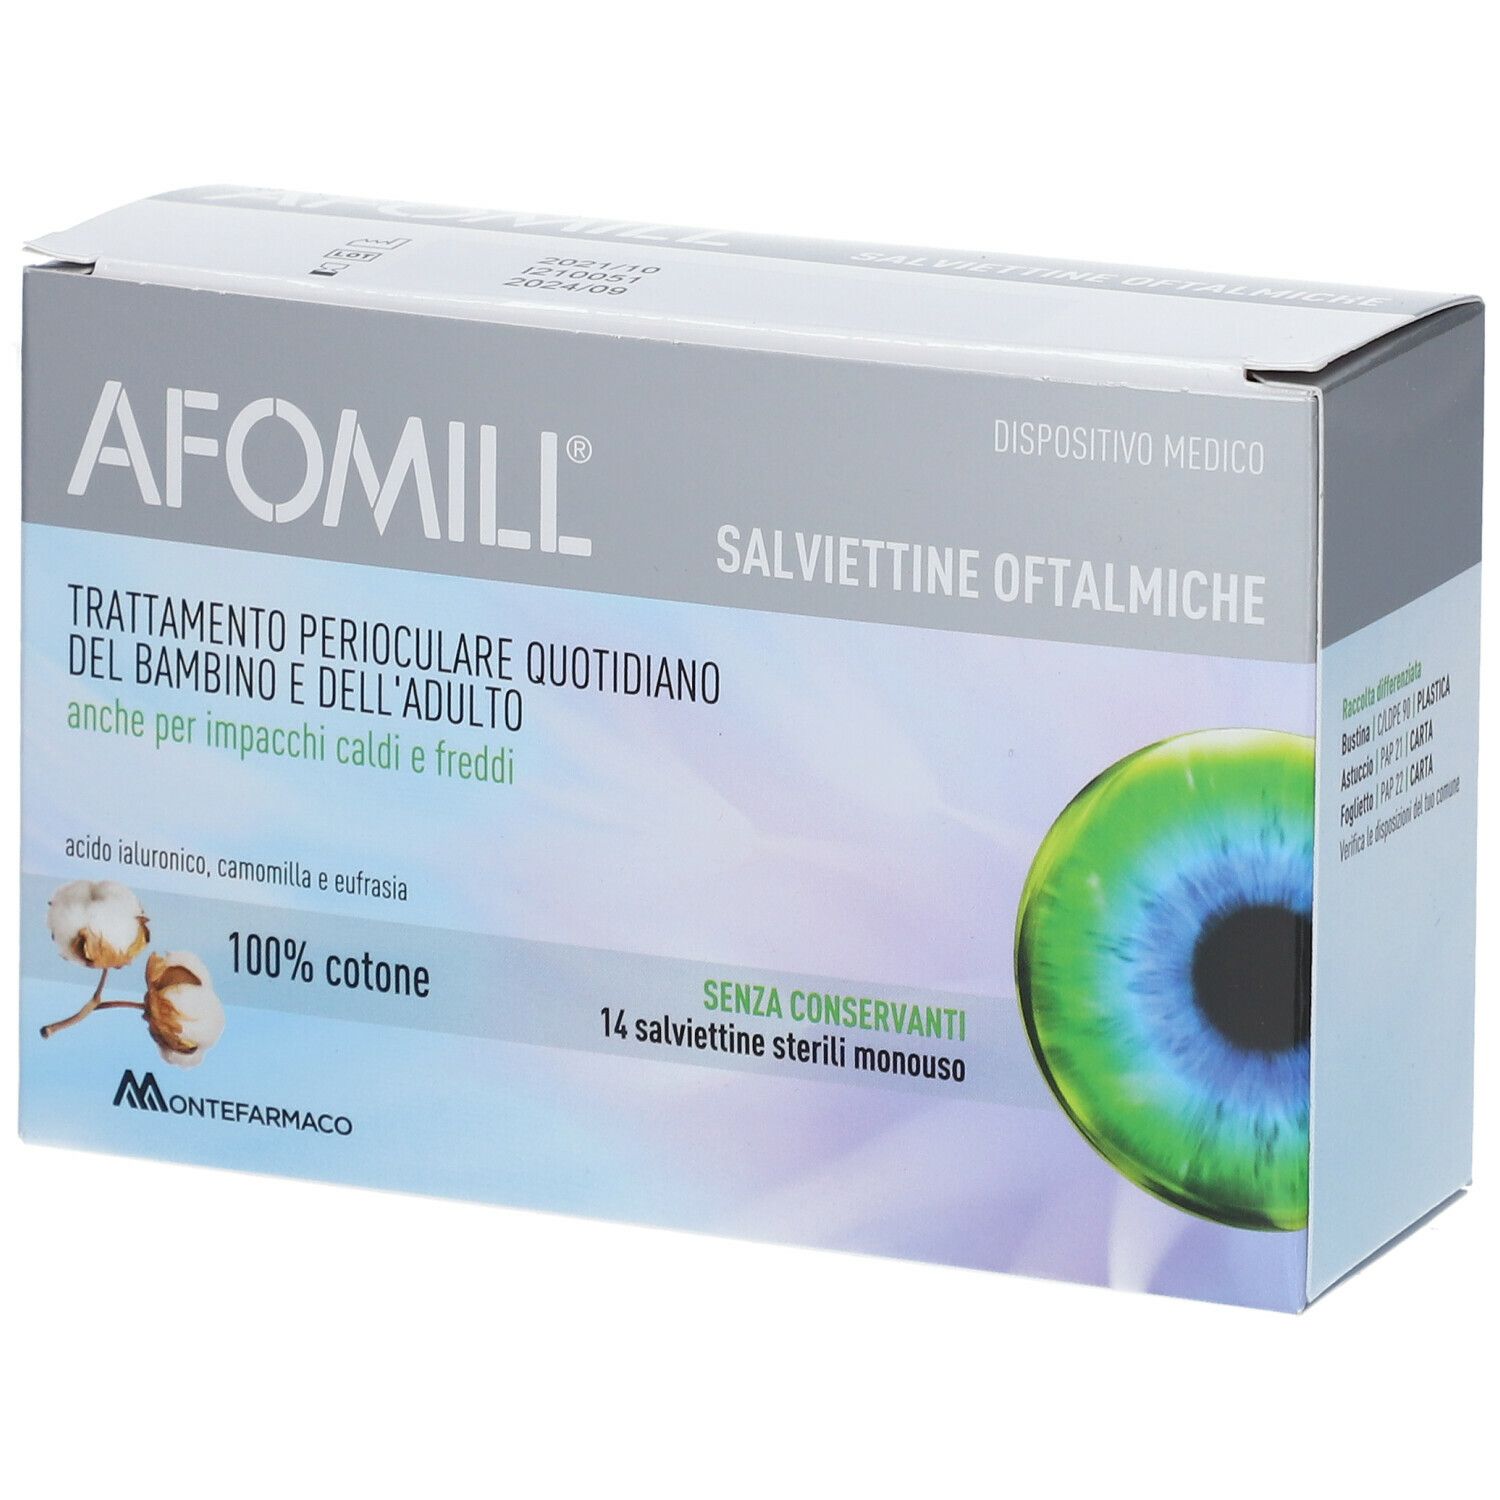 Montefarmaco Afomill® Salviettine Oftalmiche